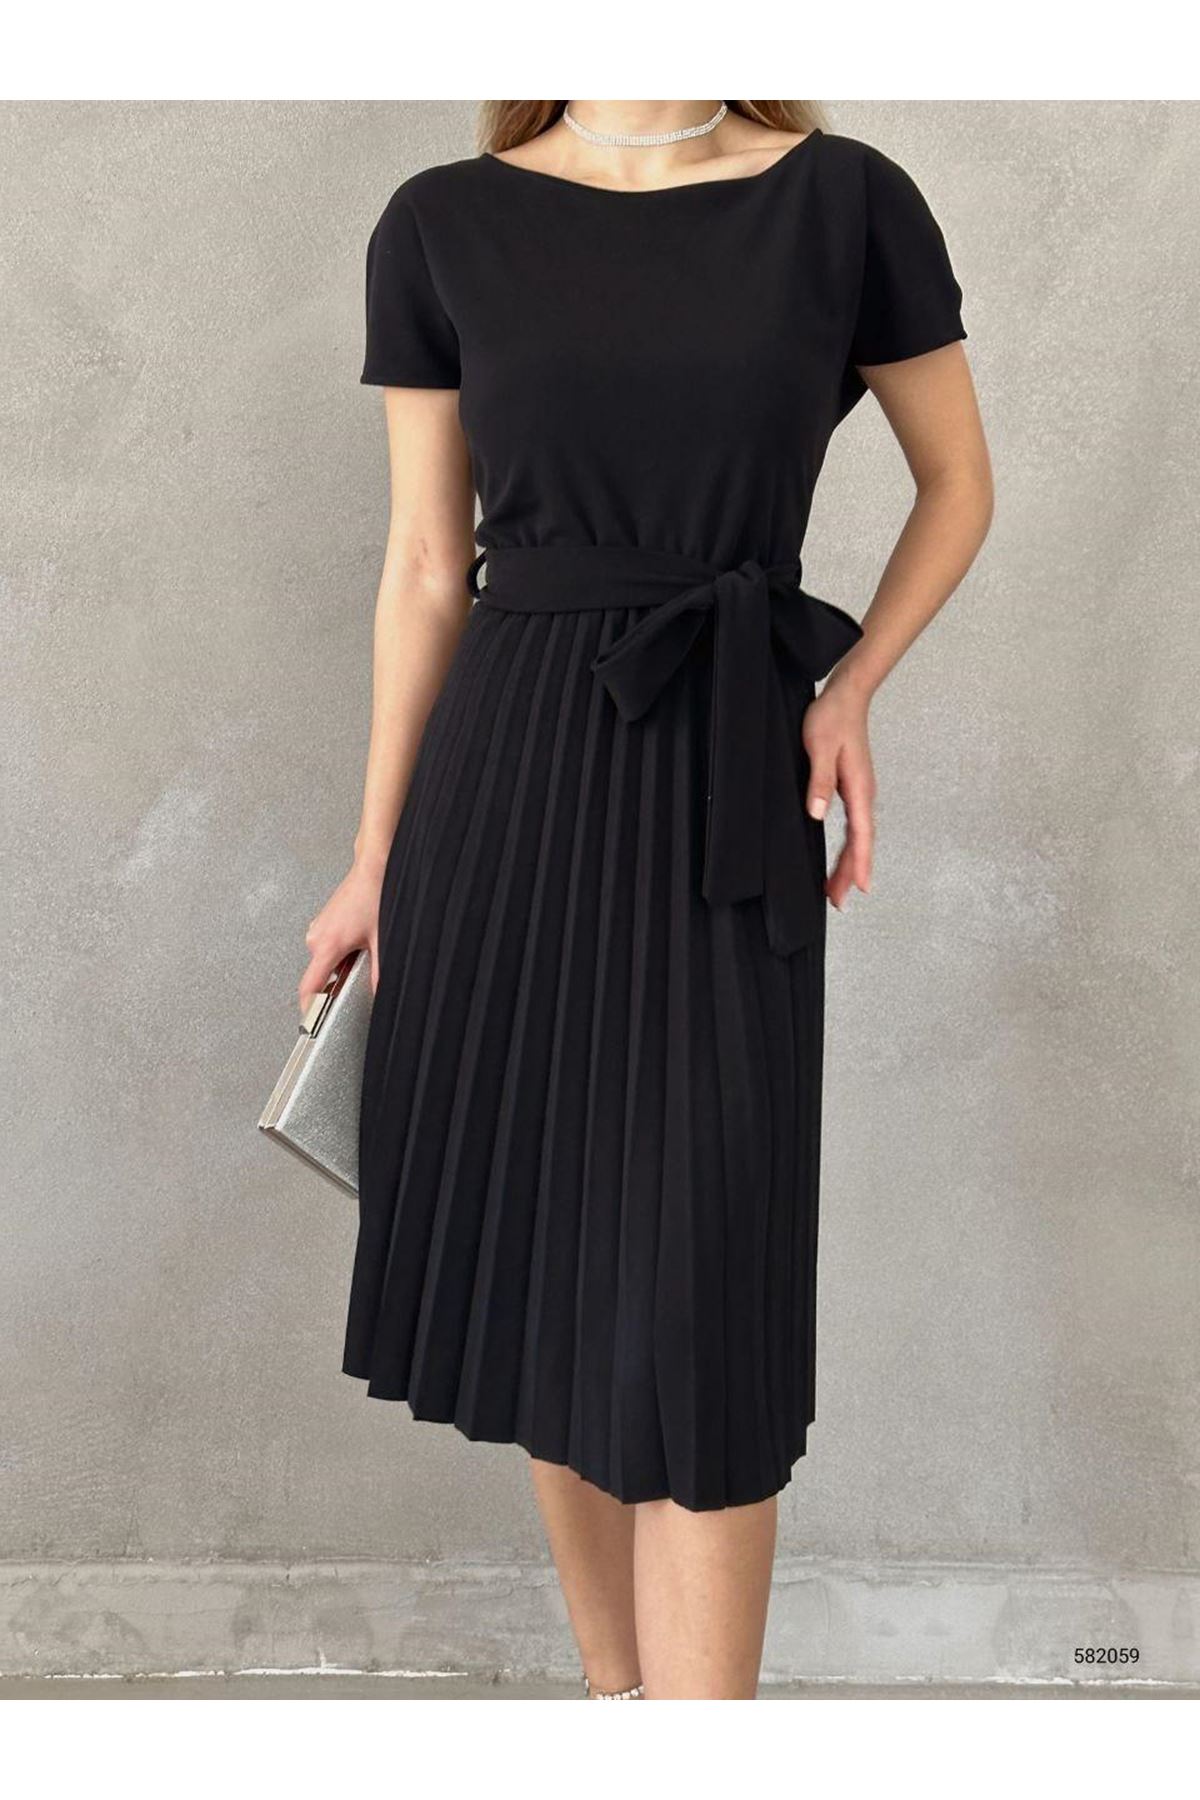 Kadın Siyah Krep Kumaş Pliseli Kuşaklı Dizaltı Elbise 2E-2127